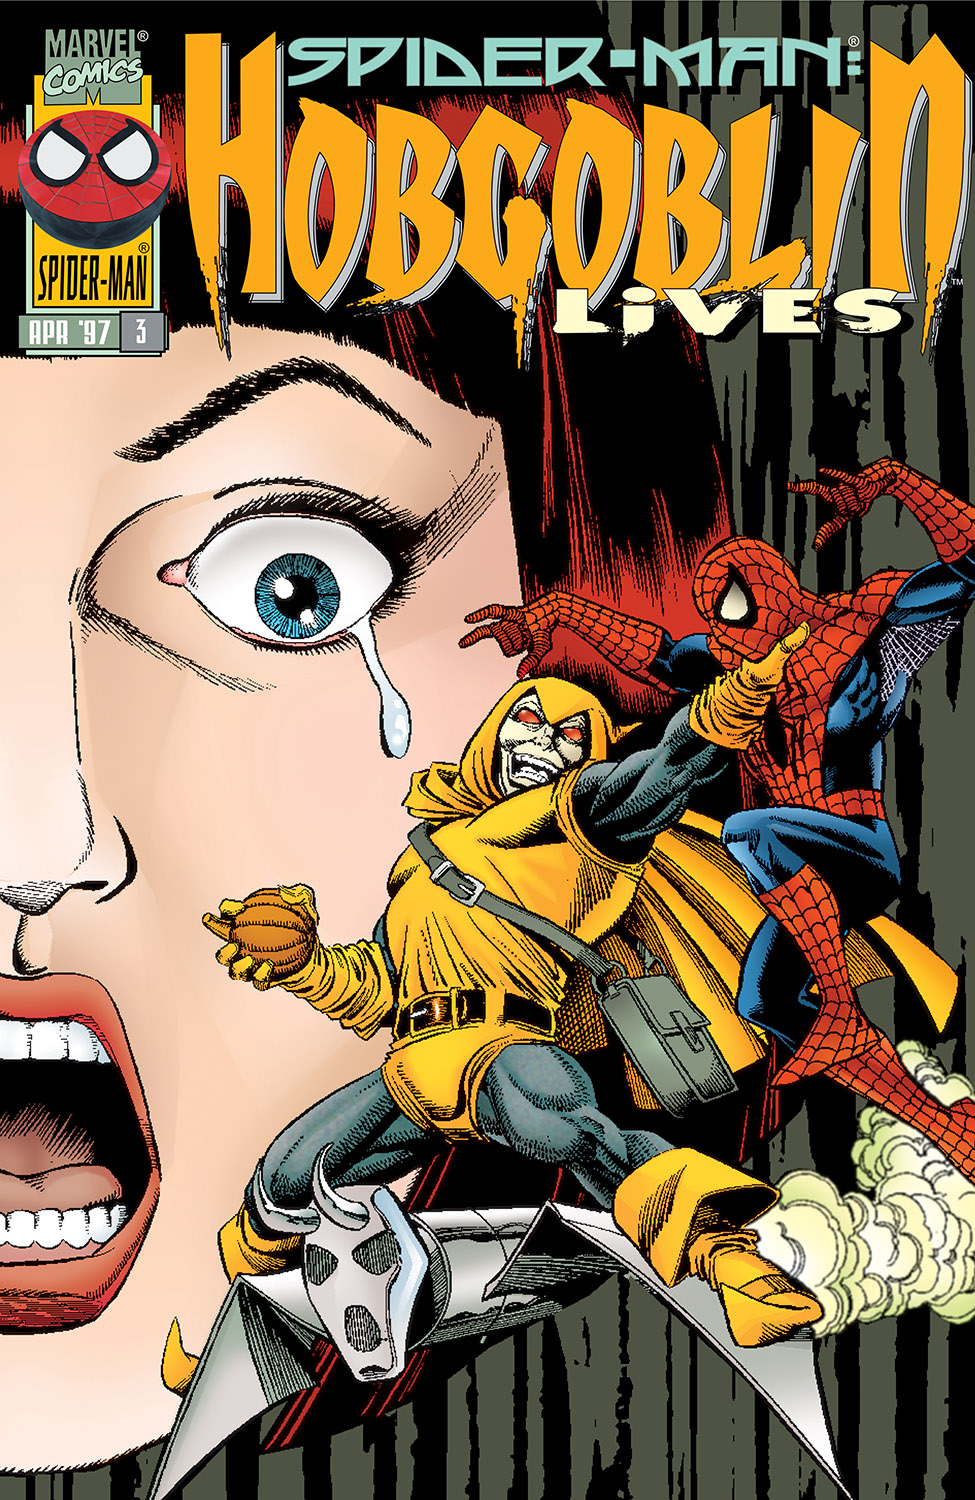 Spider-Man: Hobgoblin Lives (1997) #3